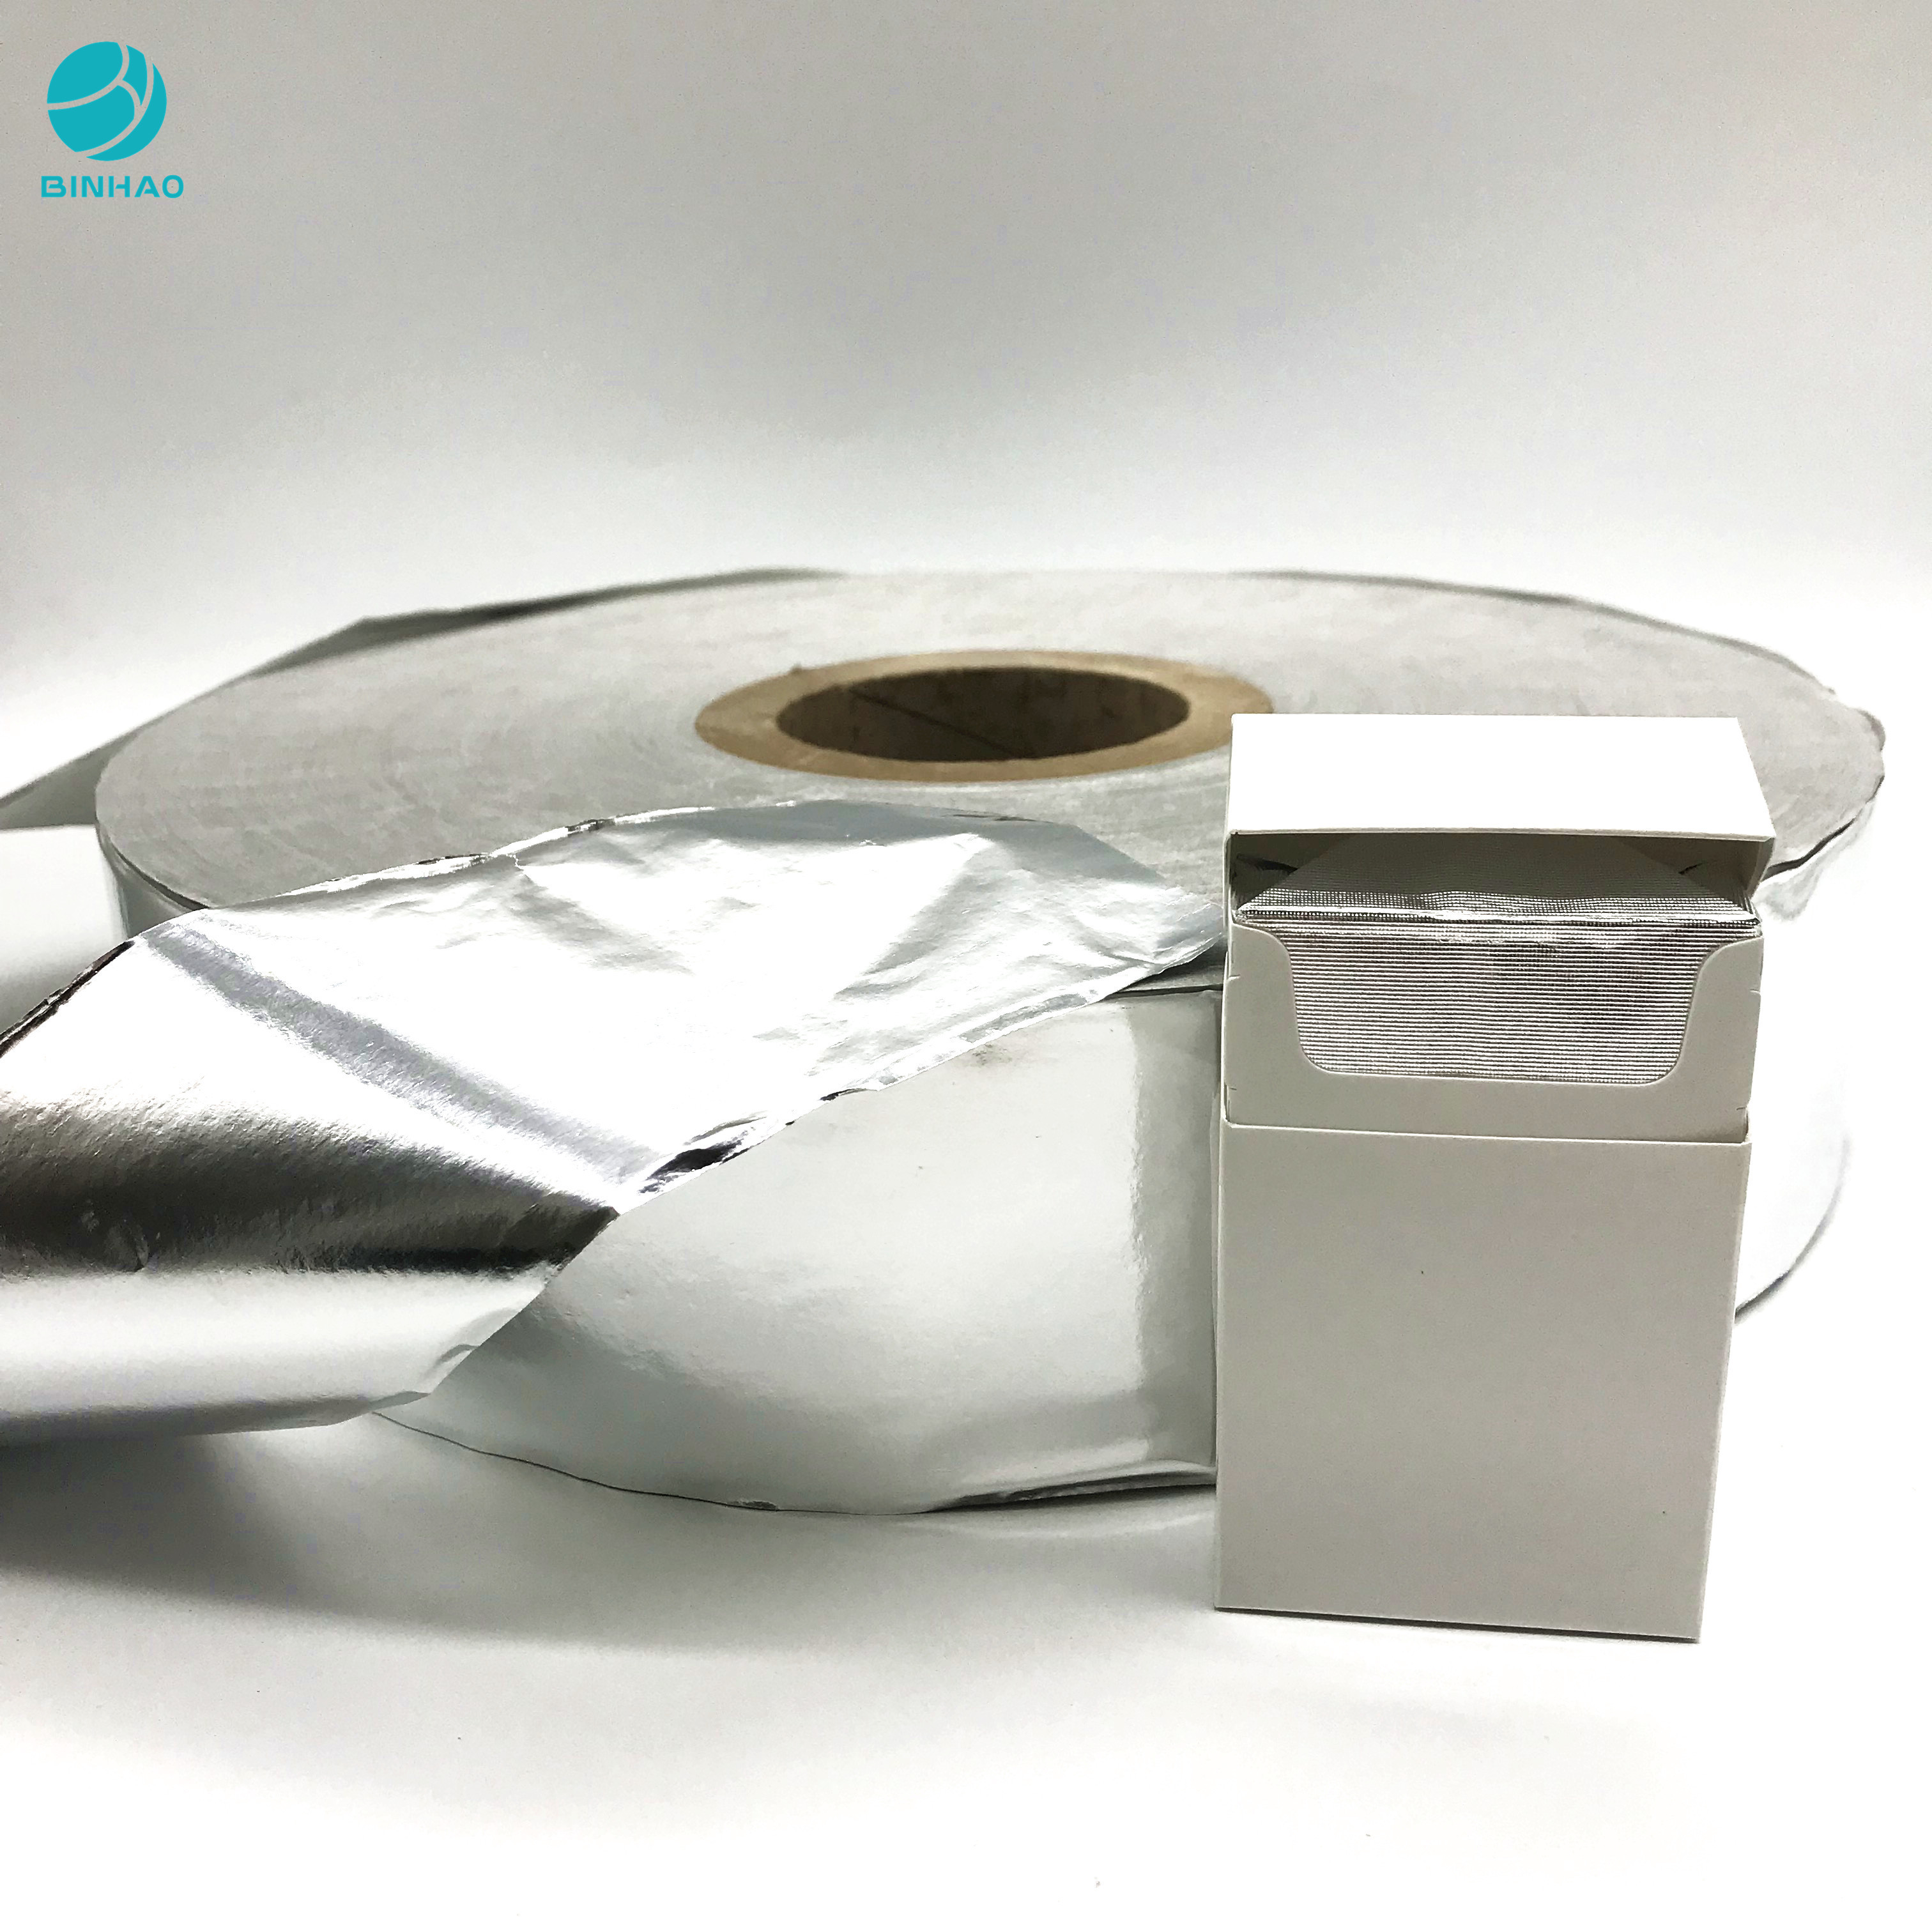 50g a stratifié le papier d'aluminium en aluminium pour l'emballage de nourriture de ménage/emballage de cigarette